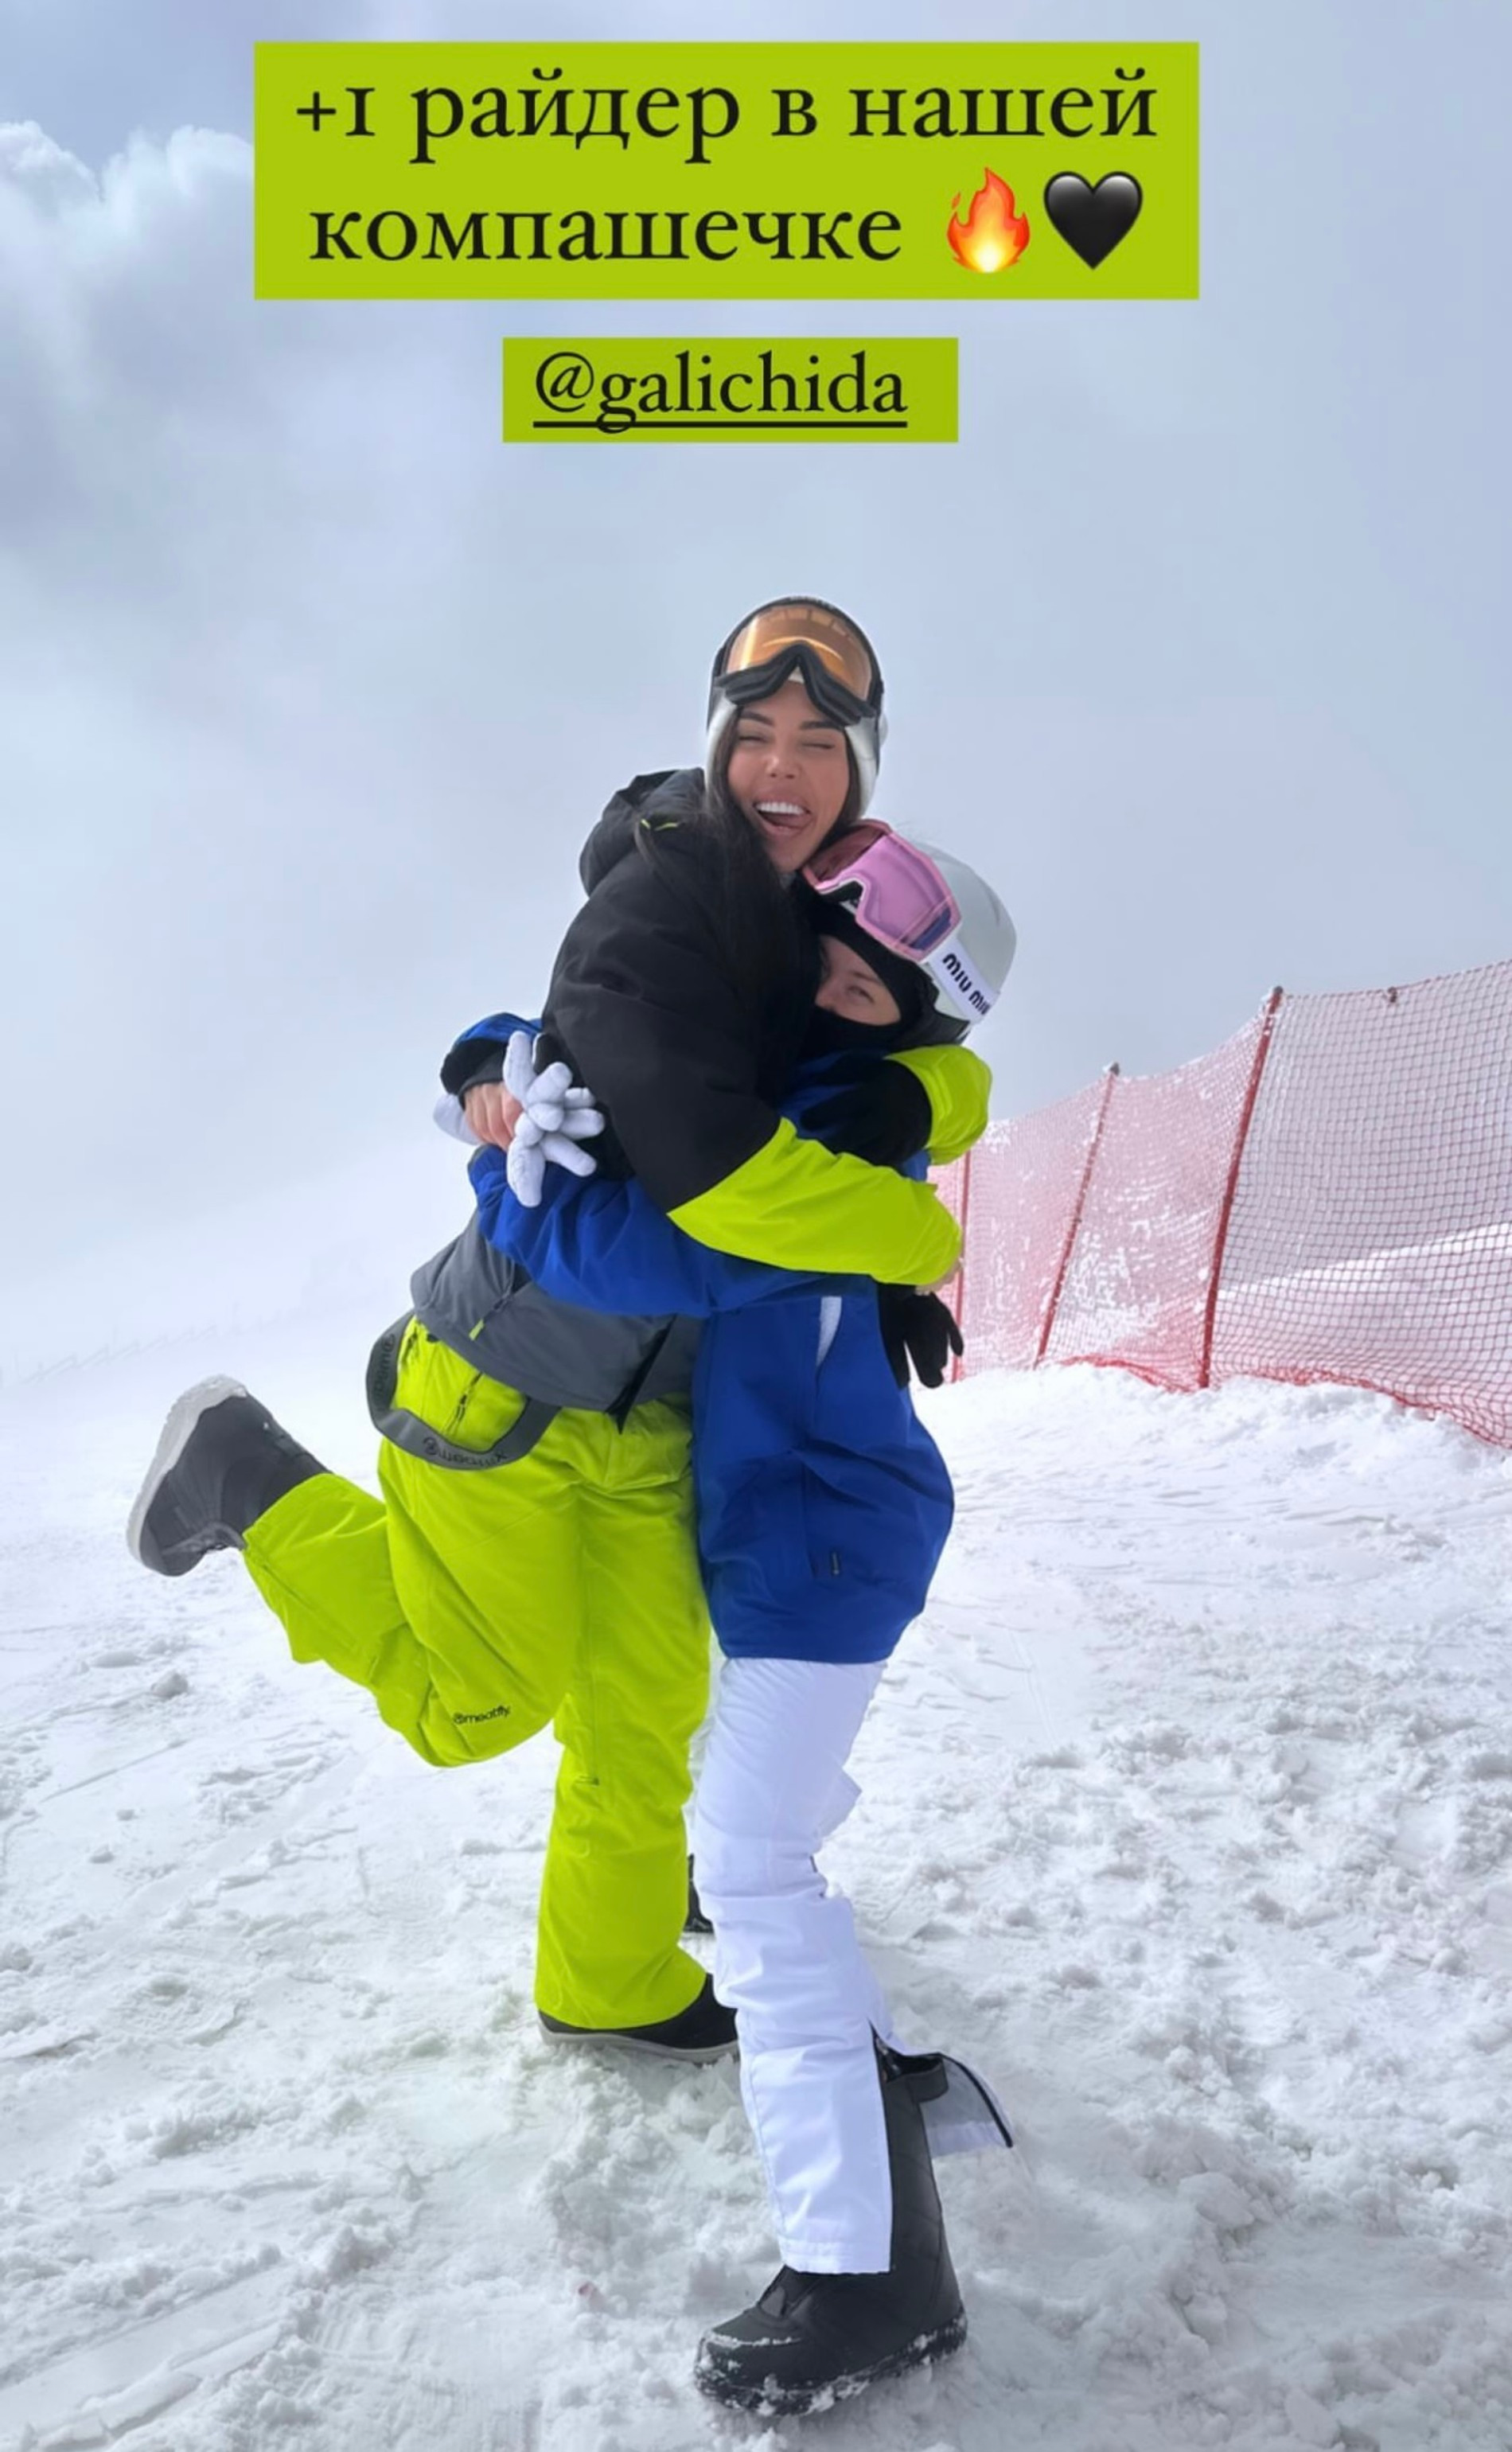 Оксана Самойлова и Ида Галич вместе отдыхают на горнолыжном курорте
Фото: Инстаграм (запрещен в РФ) @samoylovaoxana